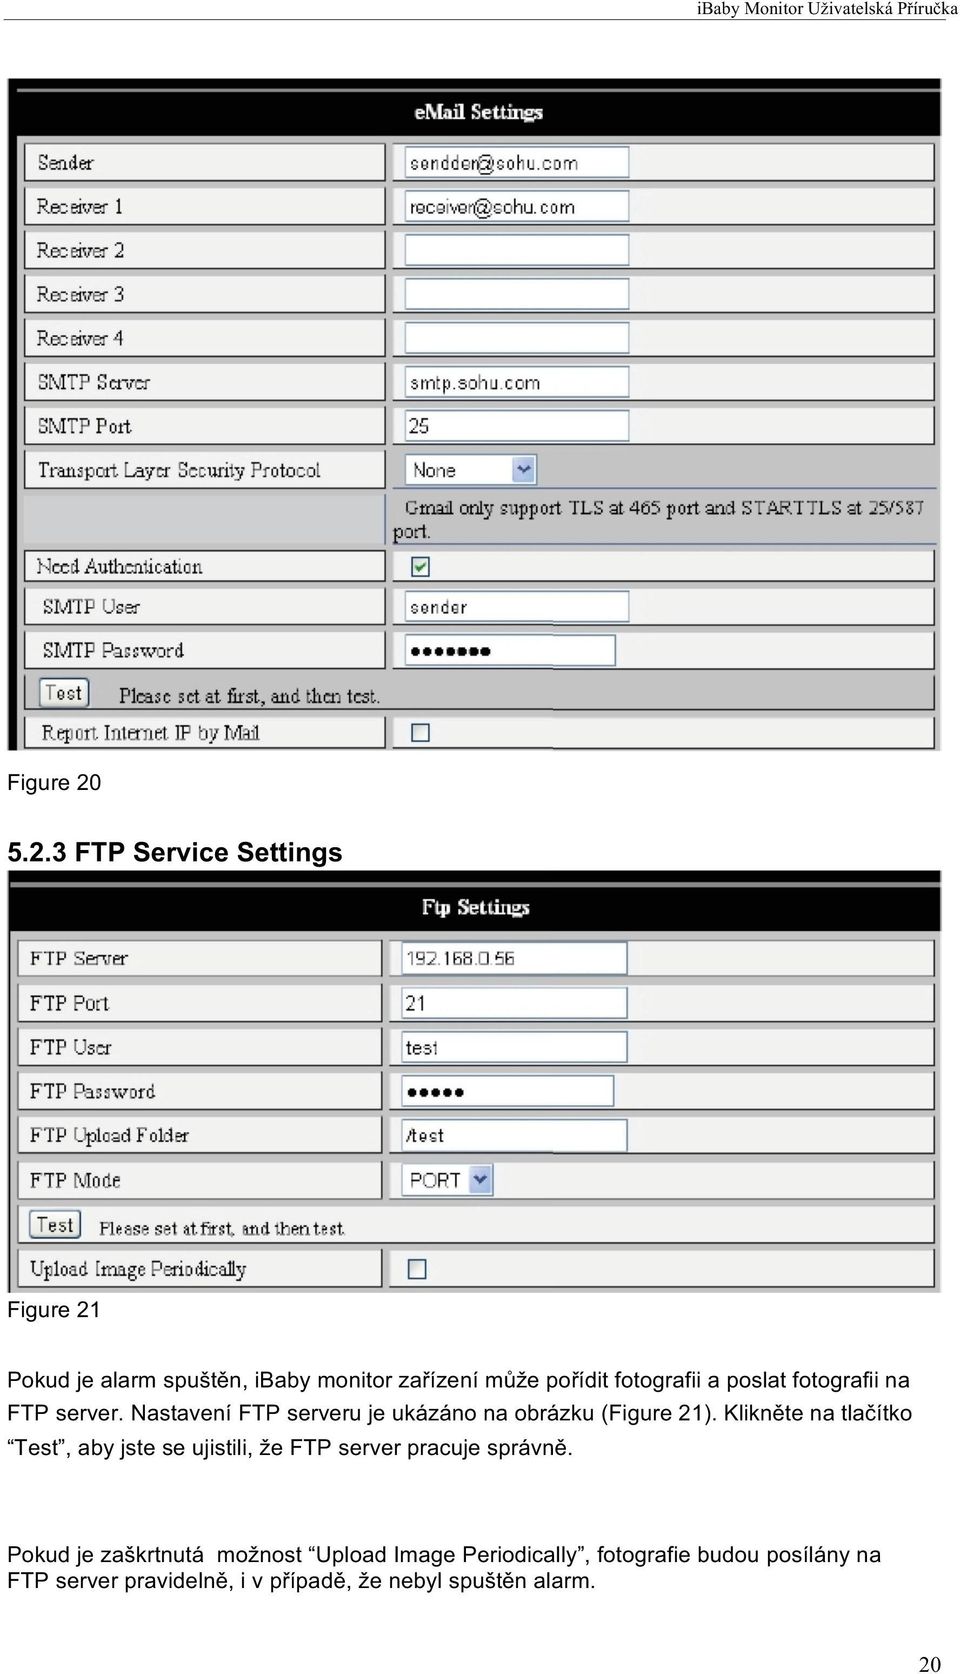 a poslat fotografii na FTP server. Nastavení FTP serveru je ukázáno na obrázku (Figure 21).